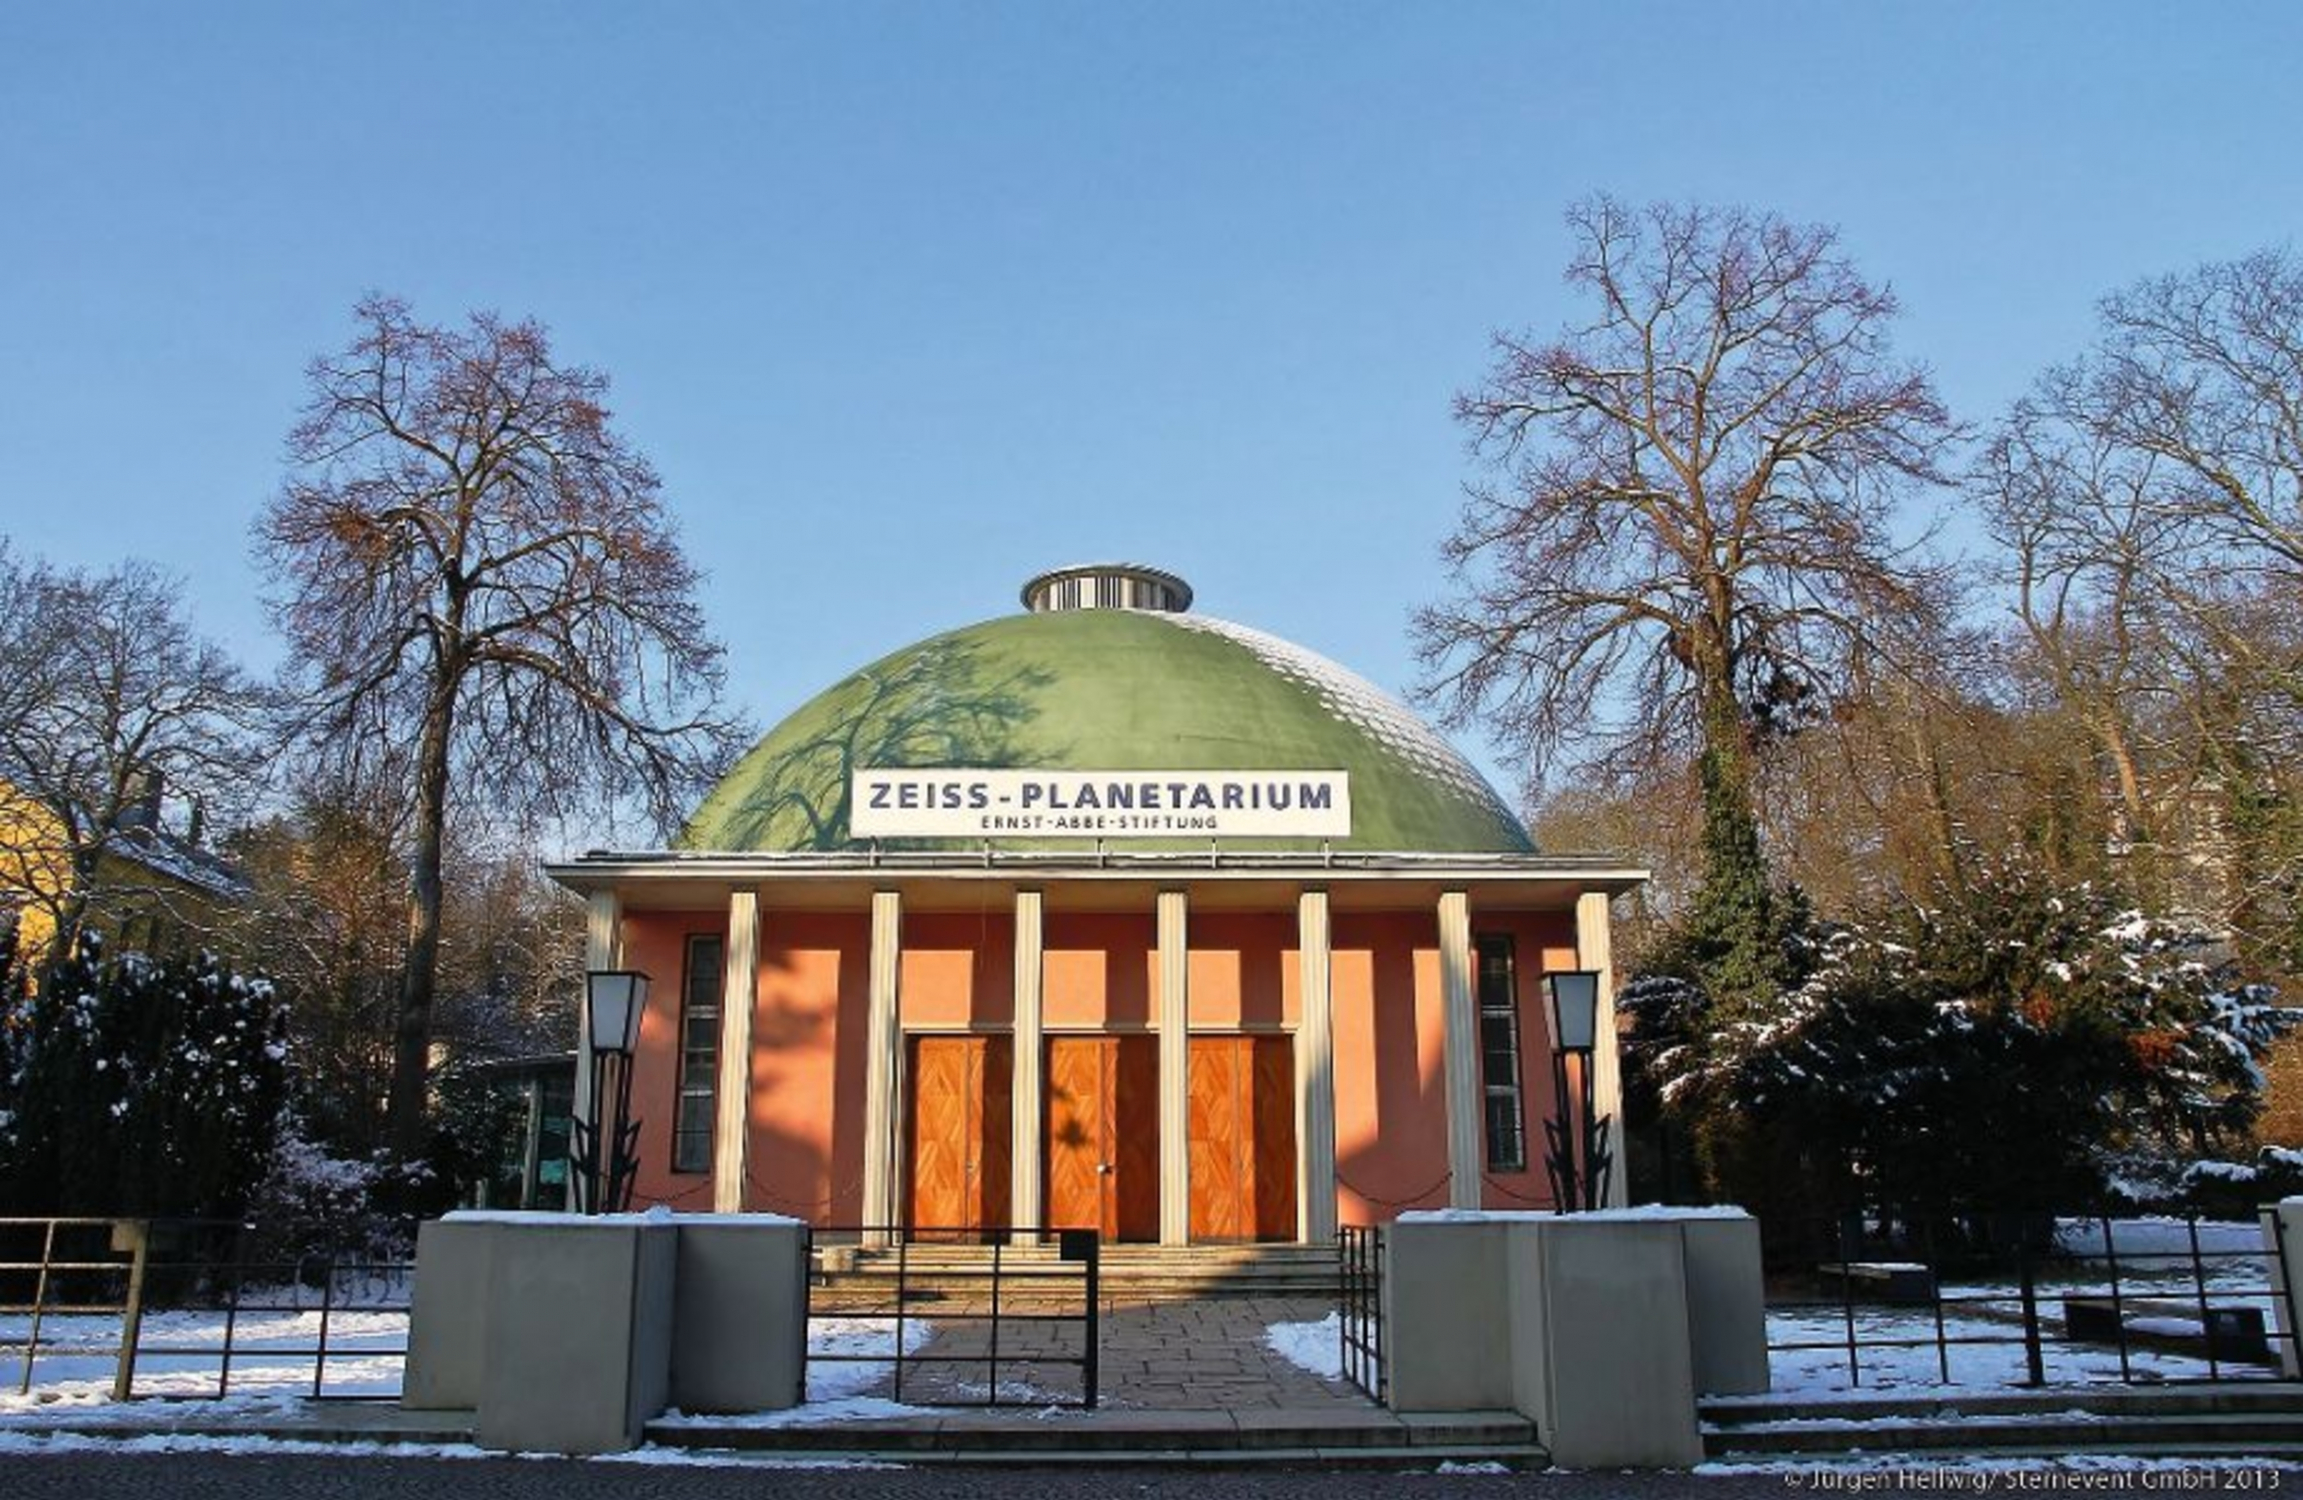 Zeiss-Planetarium Jena der Ernst-Abbe-Stiftung